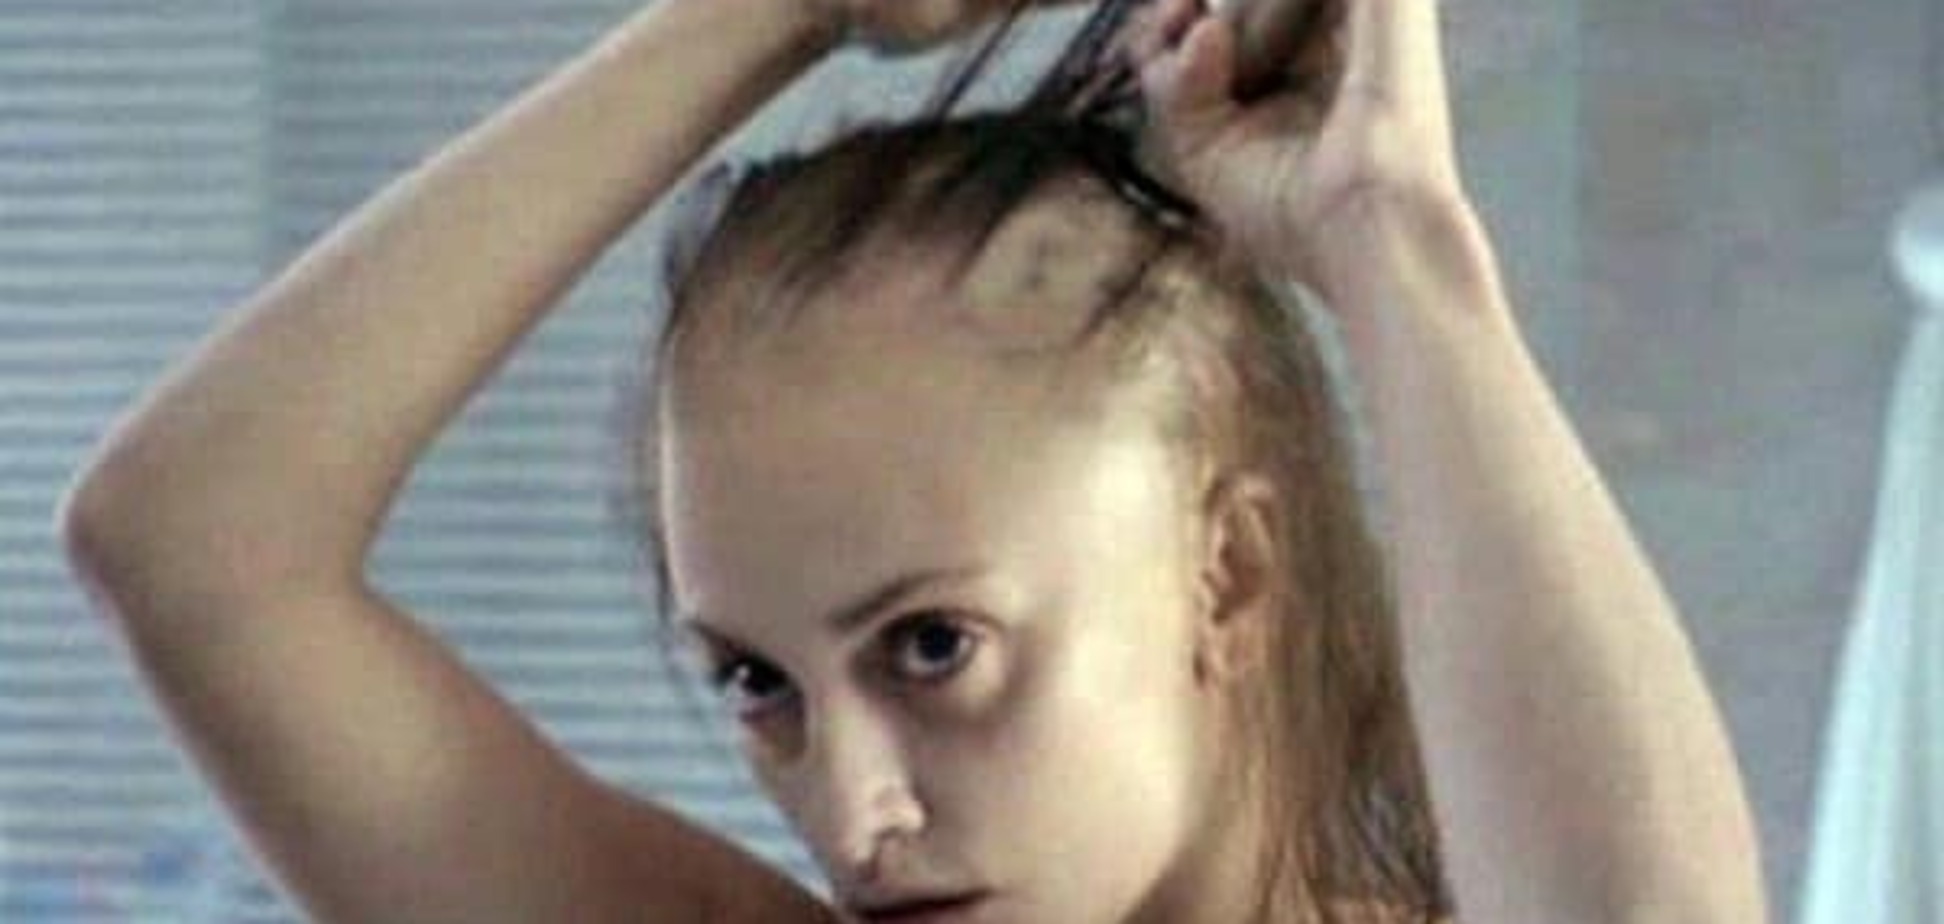 Знаменита голлівудська актриса поголила голову для нового фільму